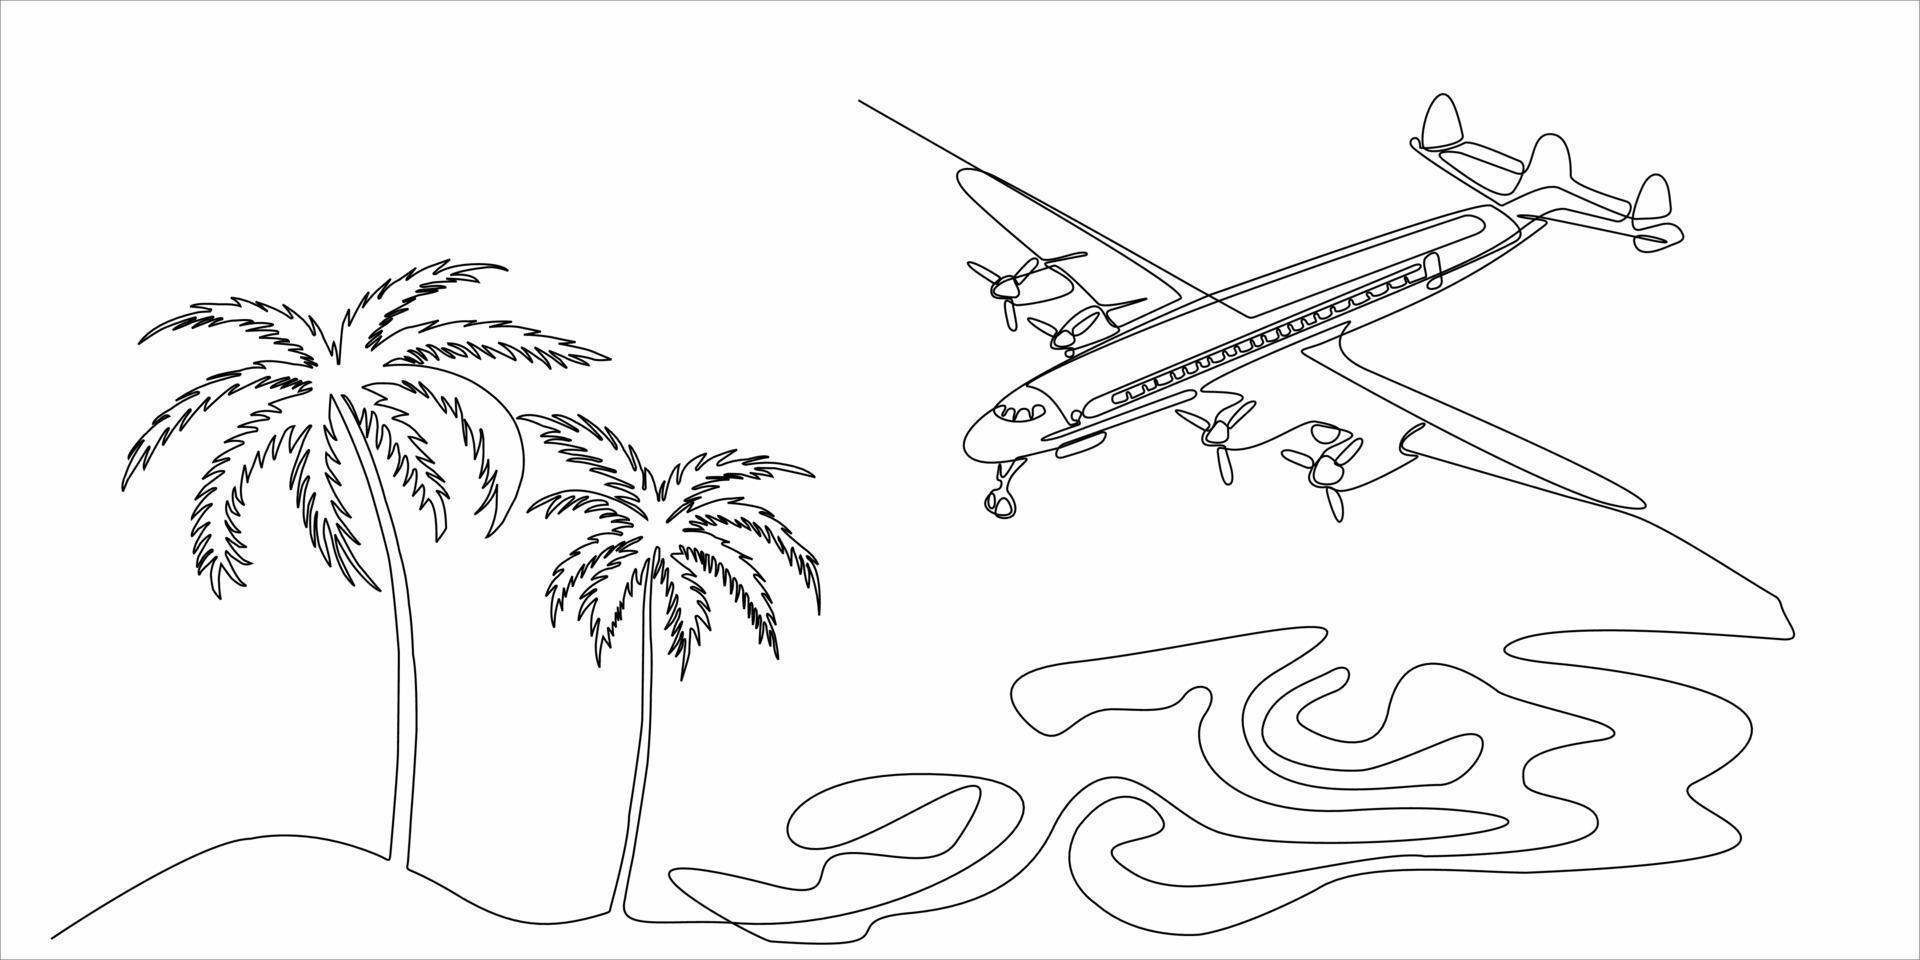 desenho de linha contínua de aviões e palmeiras vetor